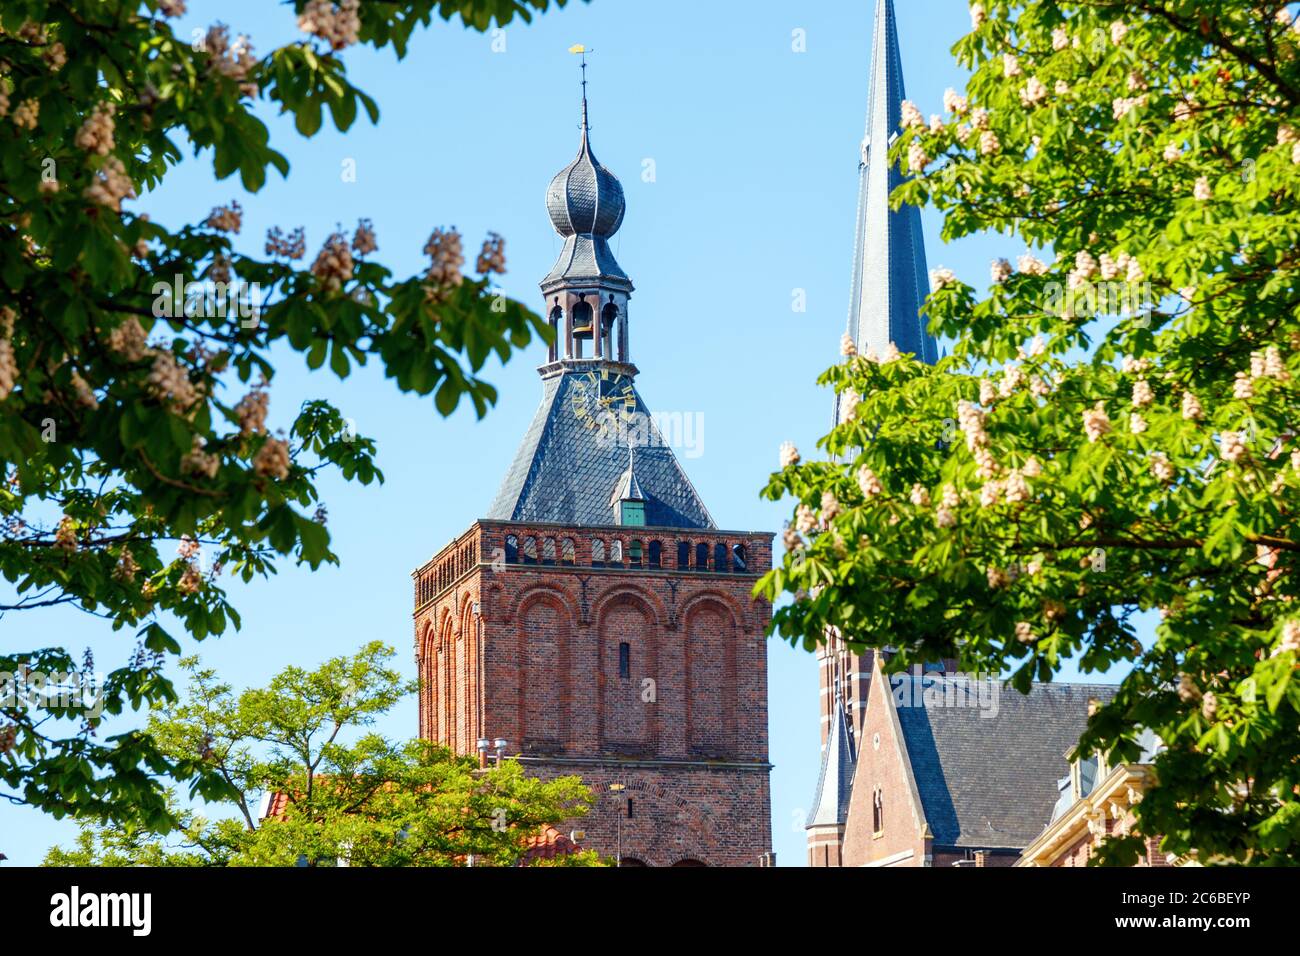 Culemborg. Fioritura degli alberi di castagno (Castanea) e le guglie del Binnenpoort e la torre della chiesa di Santa Barbara. Gelderland, Paesi Bassi. Foto Stock